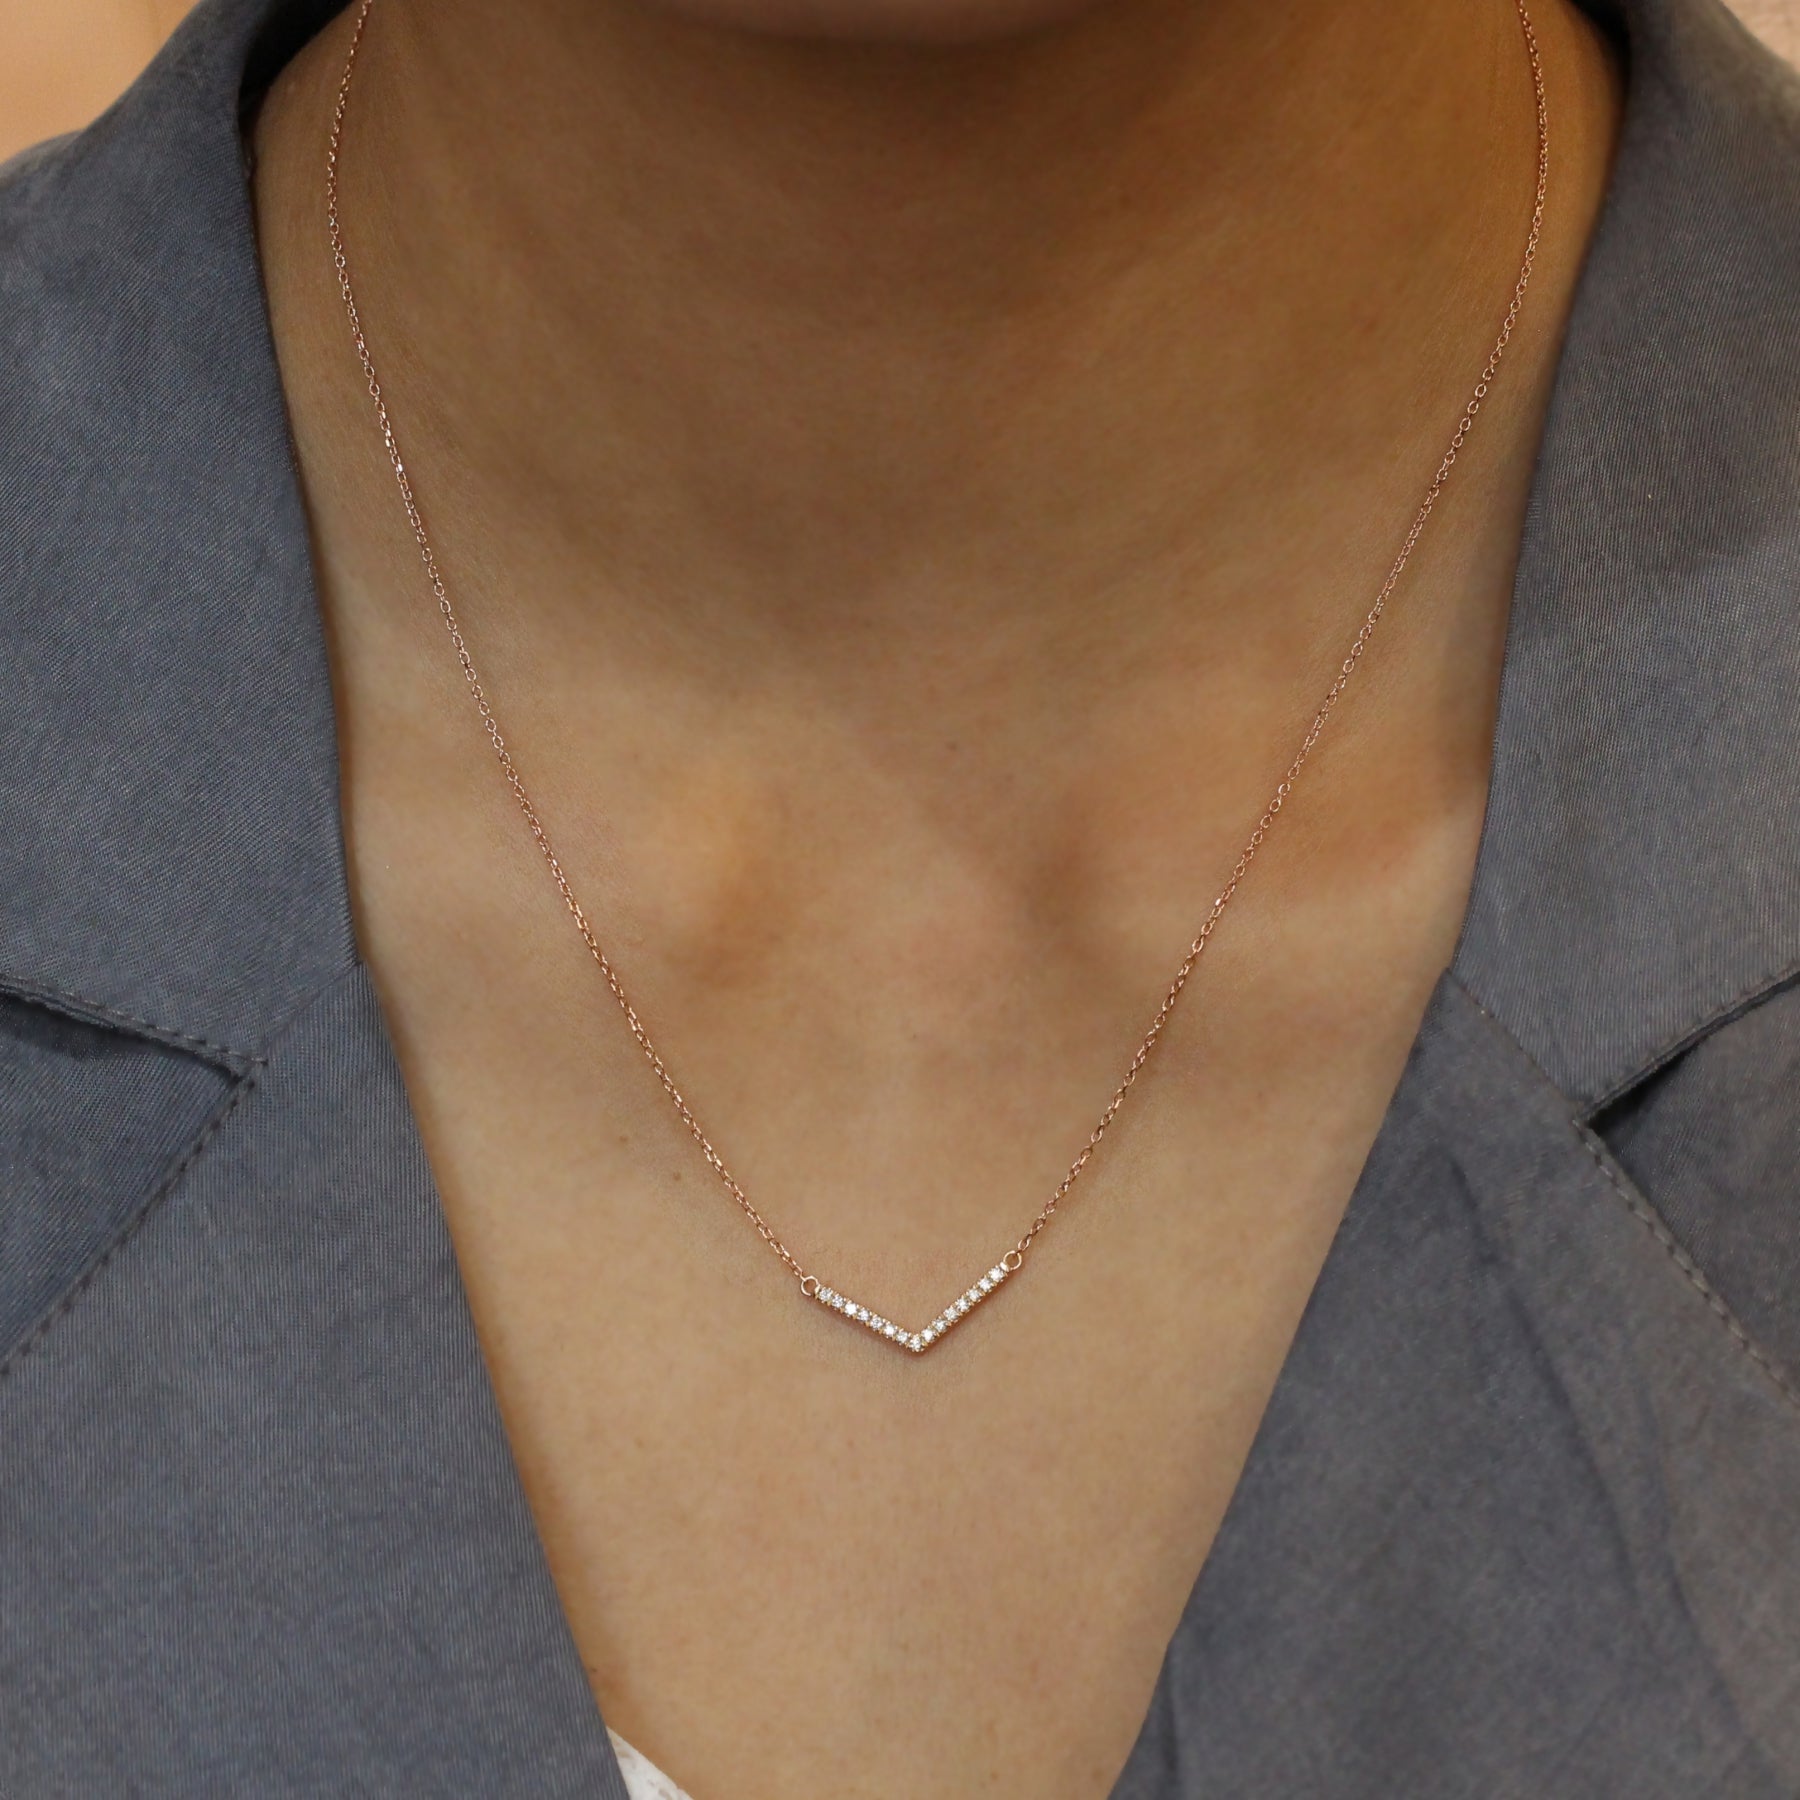 Chevron diamond necklace rose gold V shaped pendant la more design jewelry